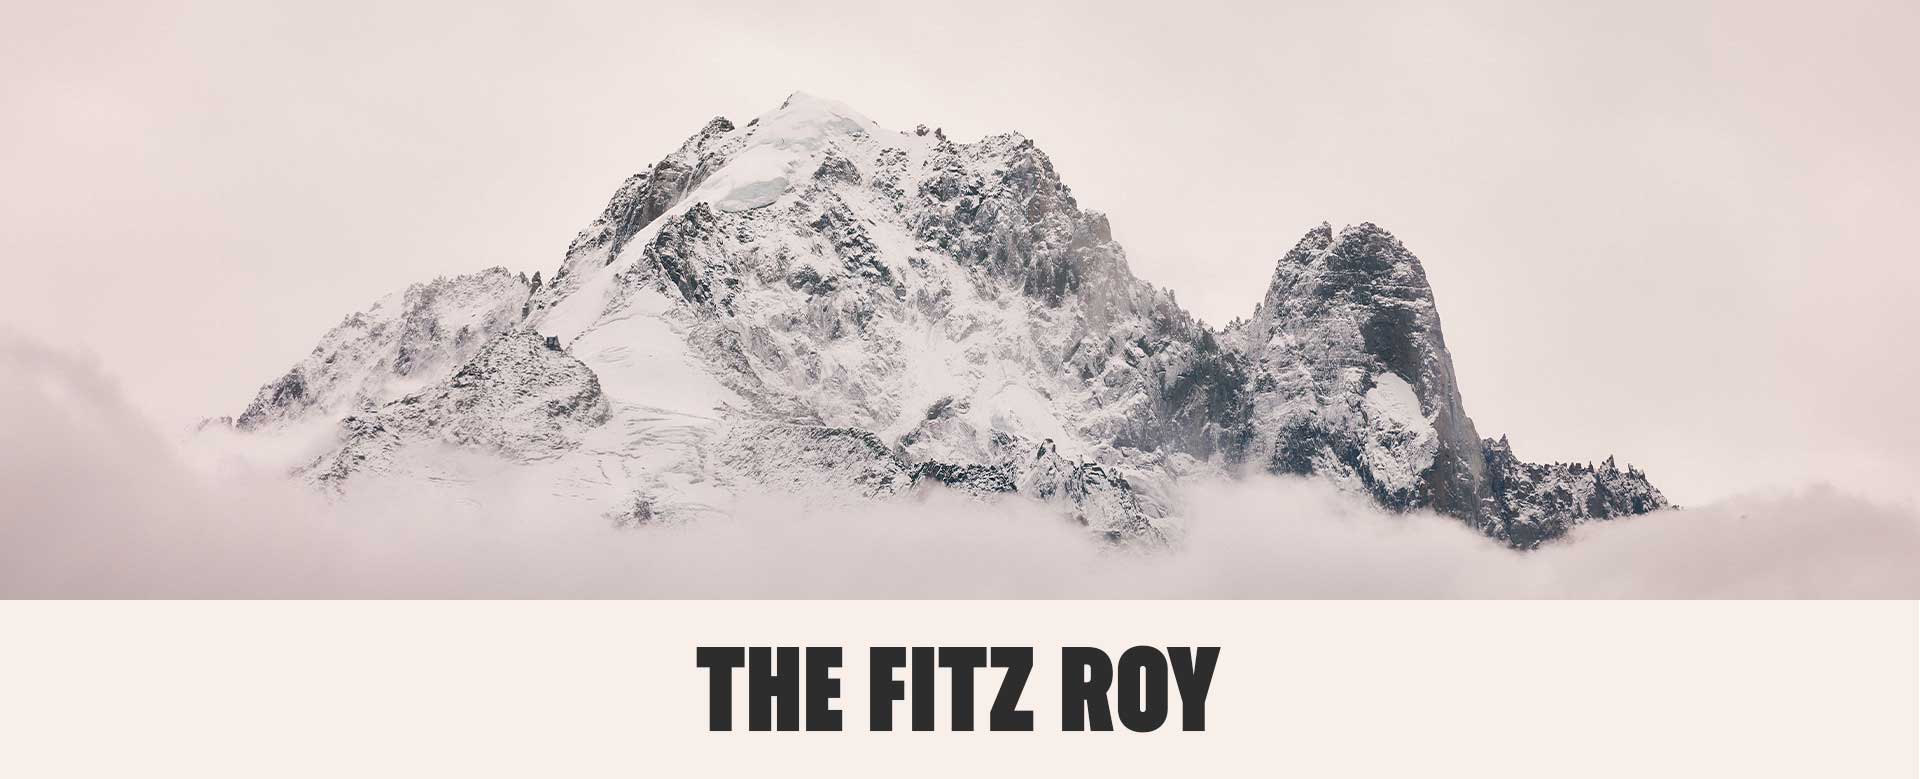 Mont FITZ ROY